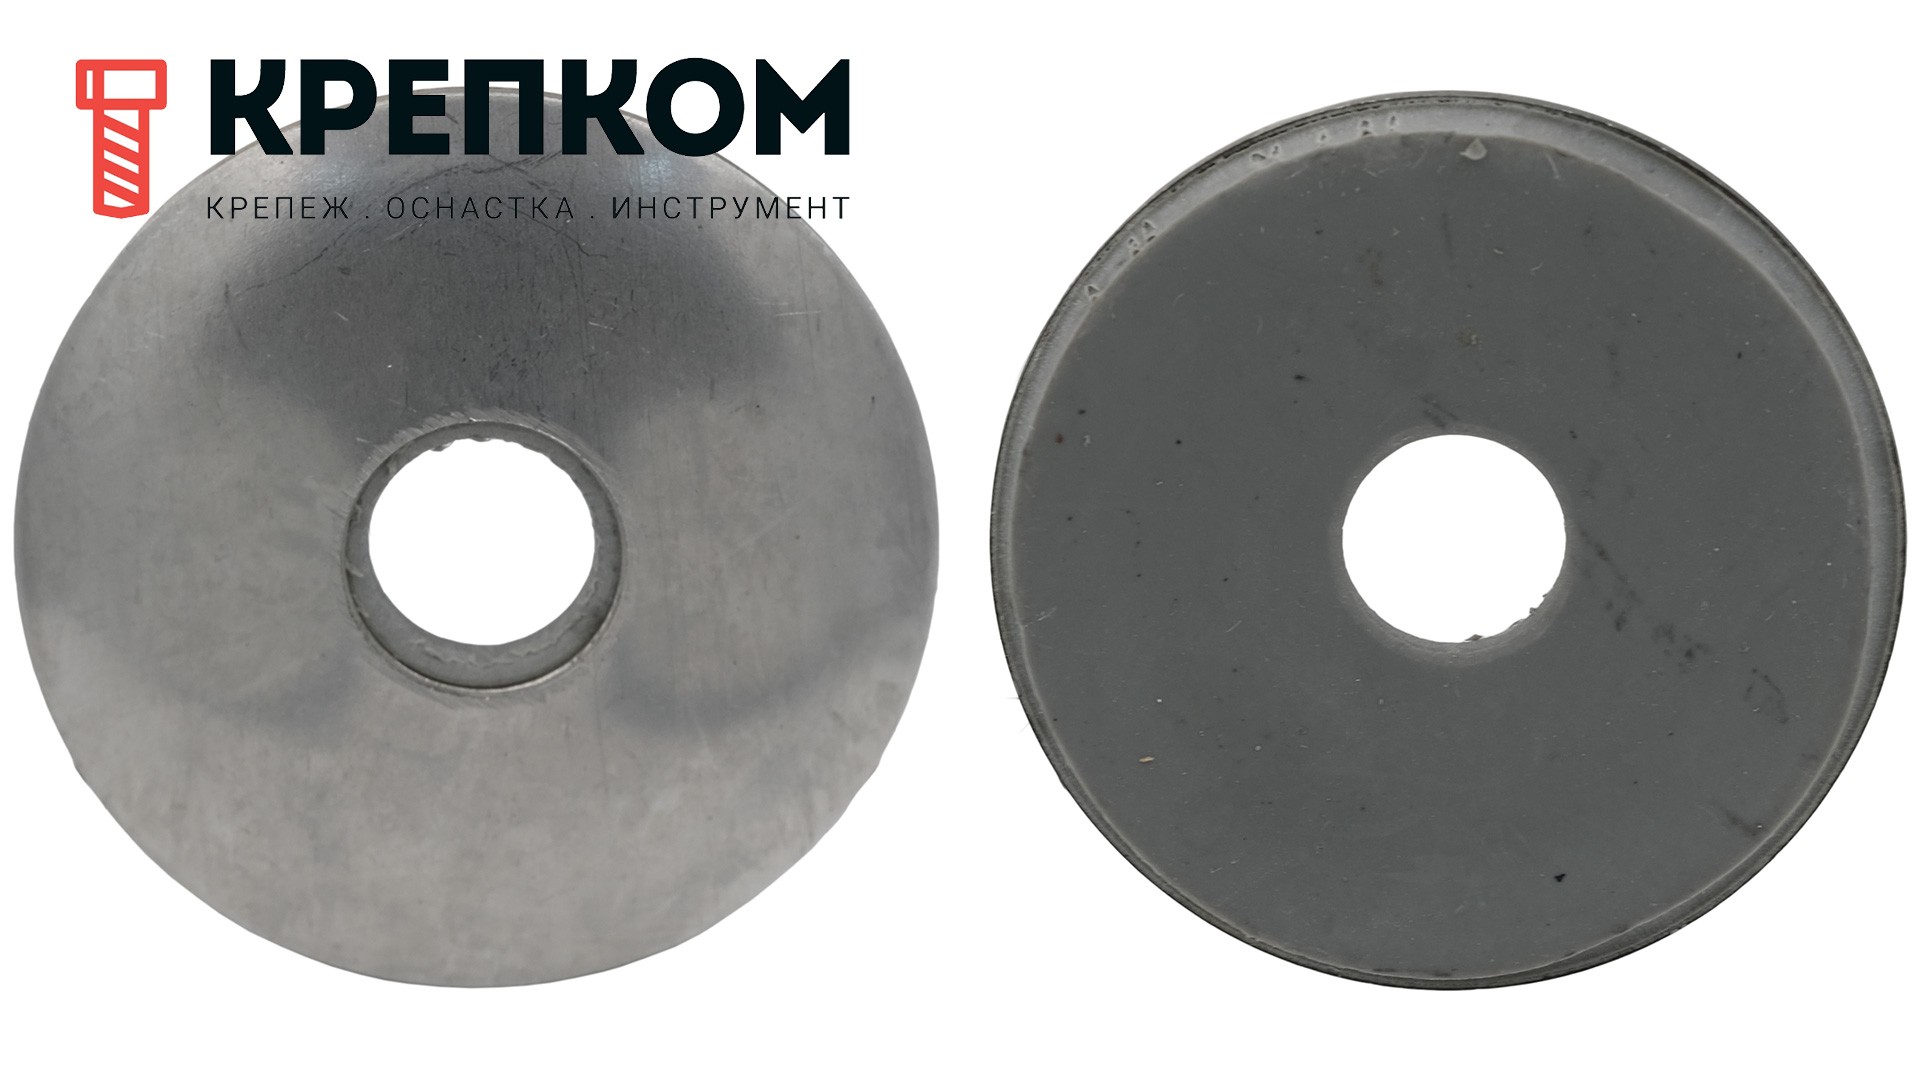 Шайба кровельная с резиновой прокладкой EPDM 4,8х14 мм WS 9260 (9055), нержавеющая сталь А2 - фото